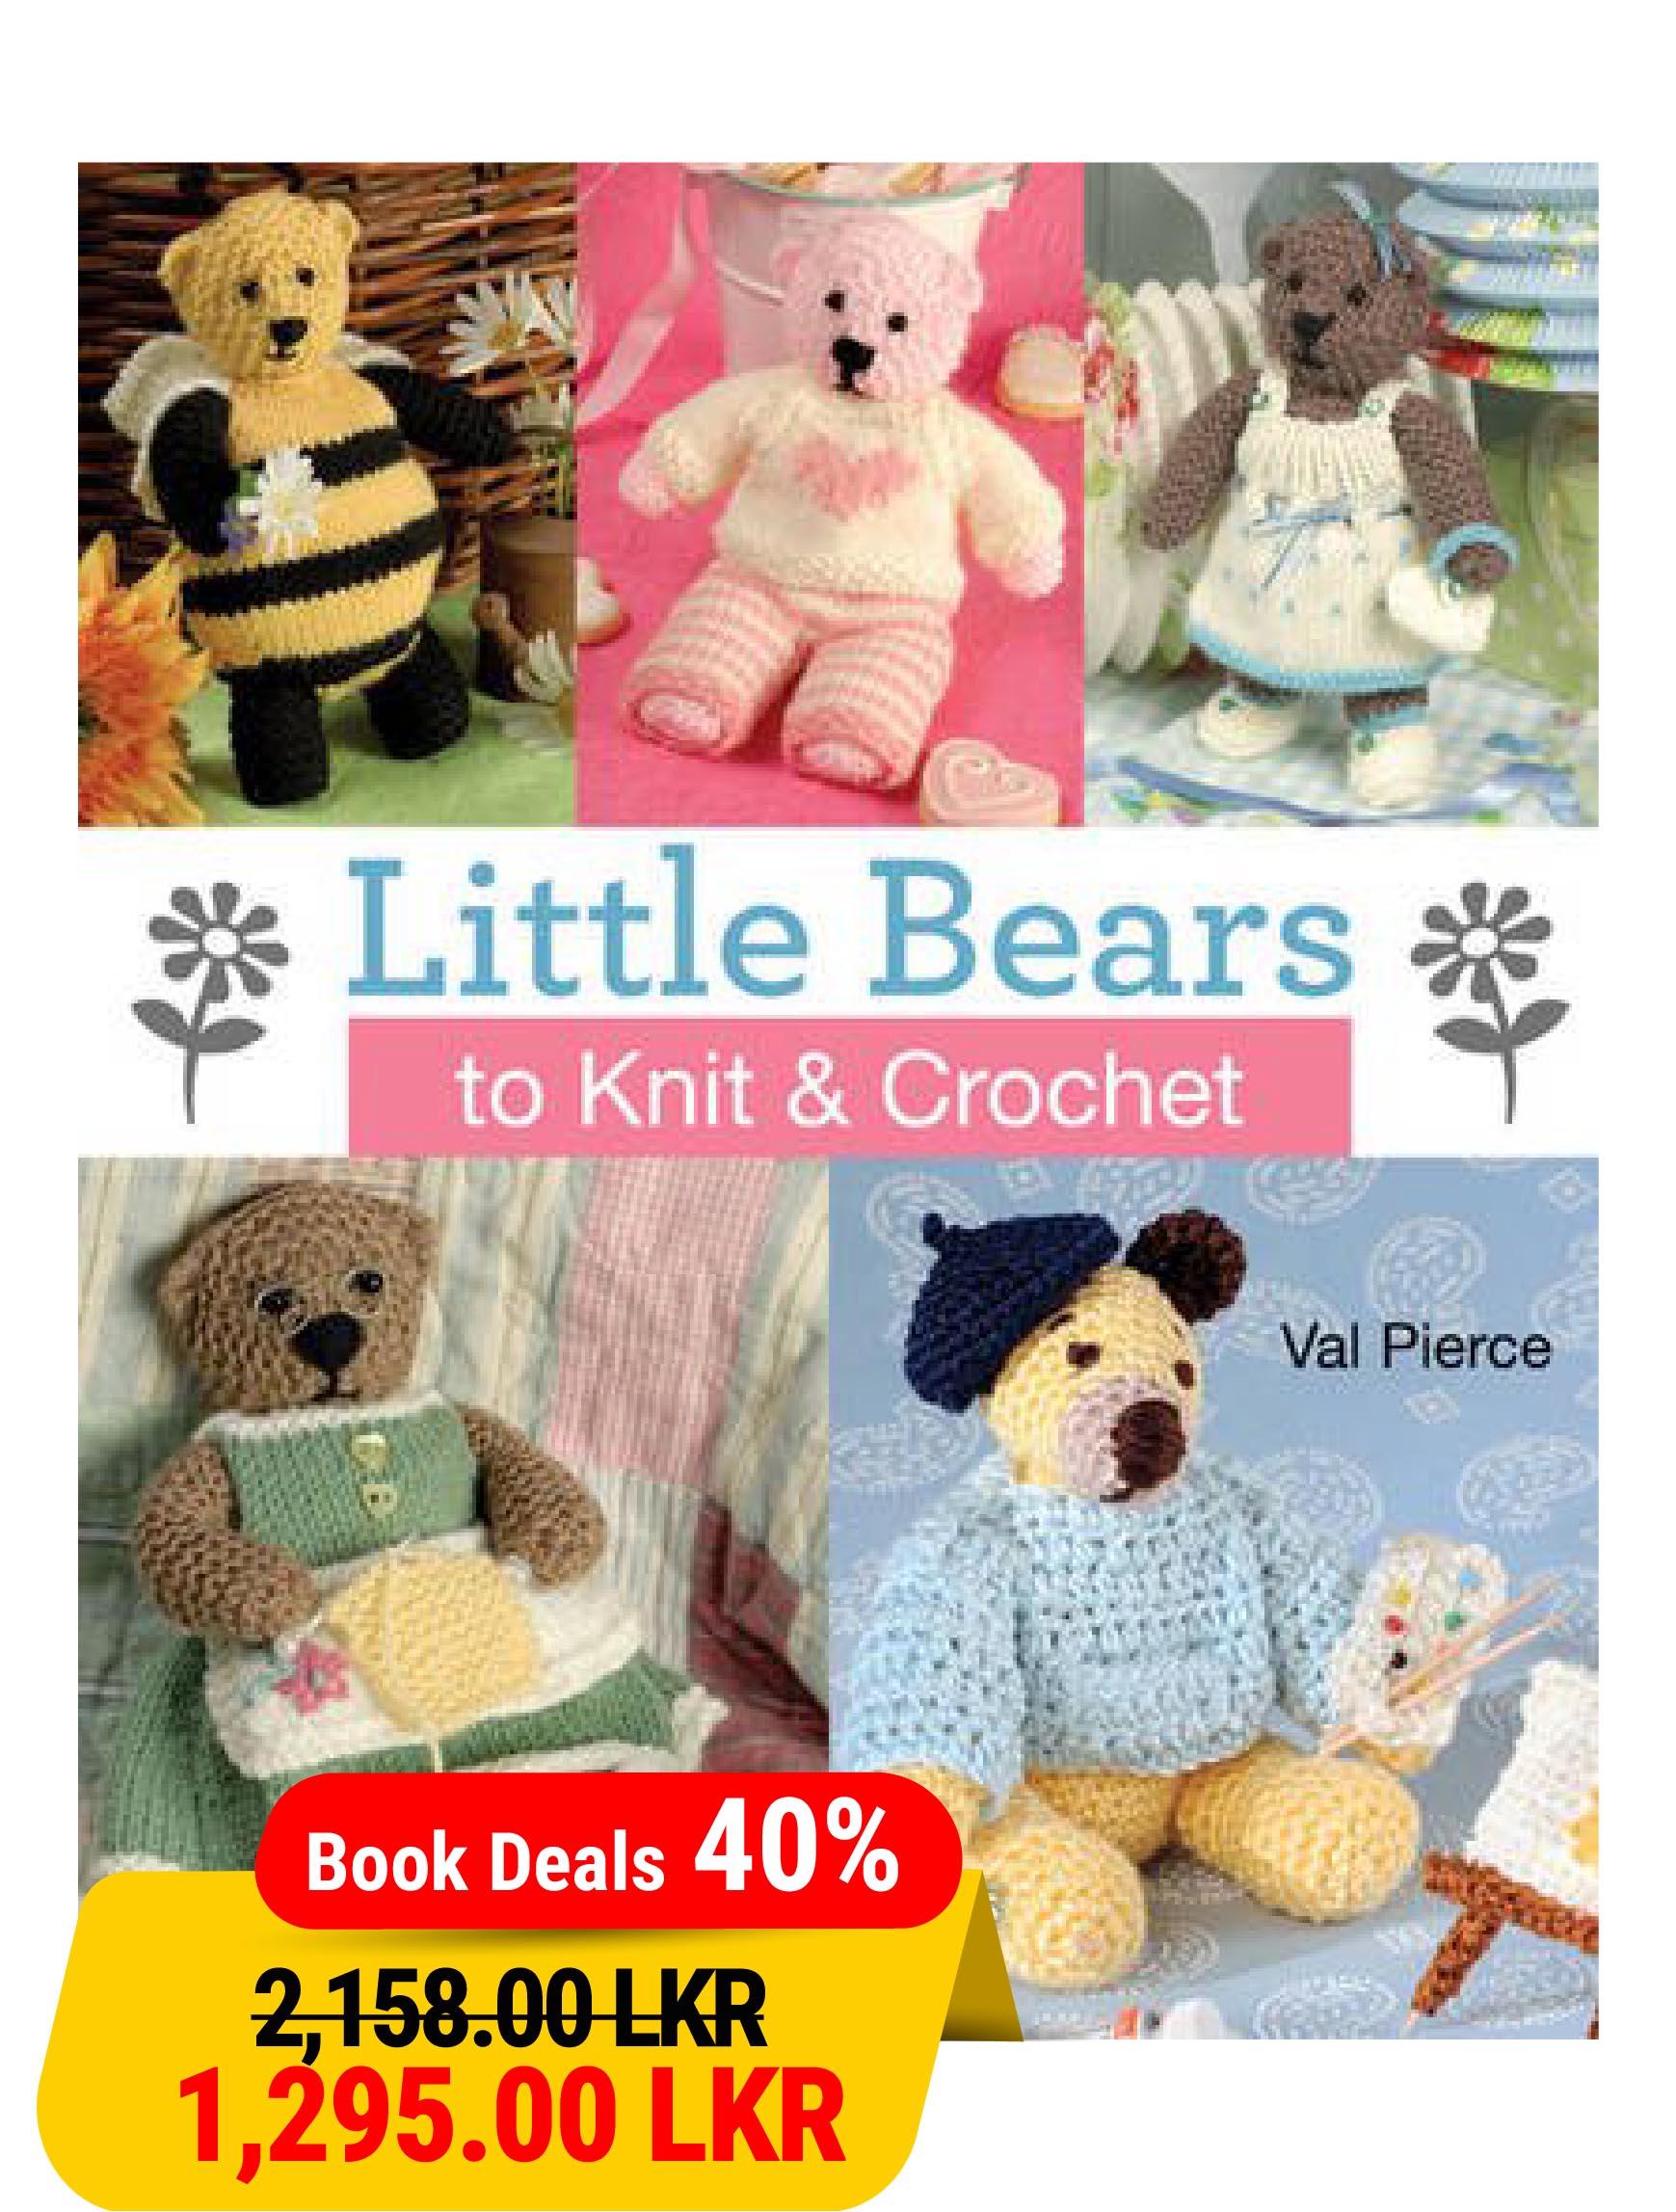 Little Bears to Knit & Crochet